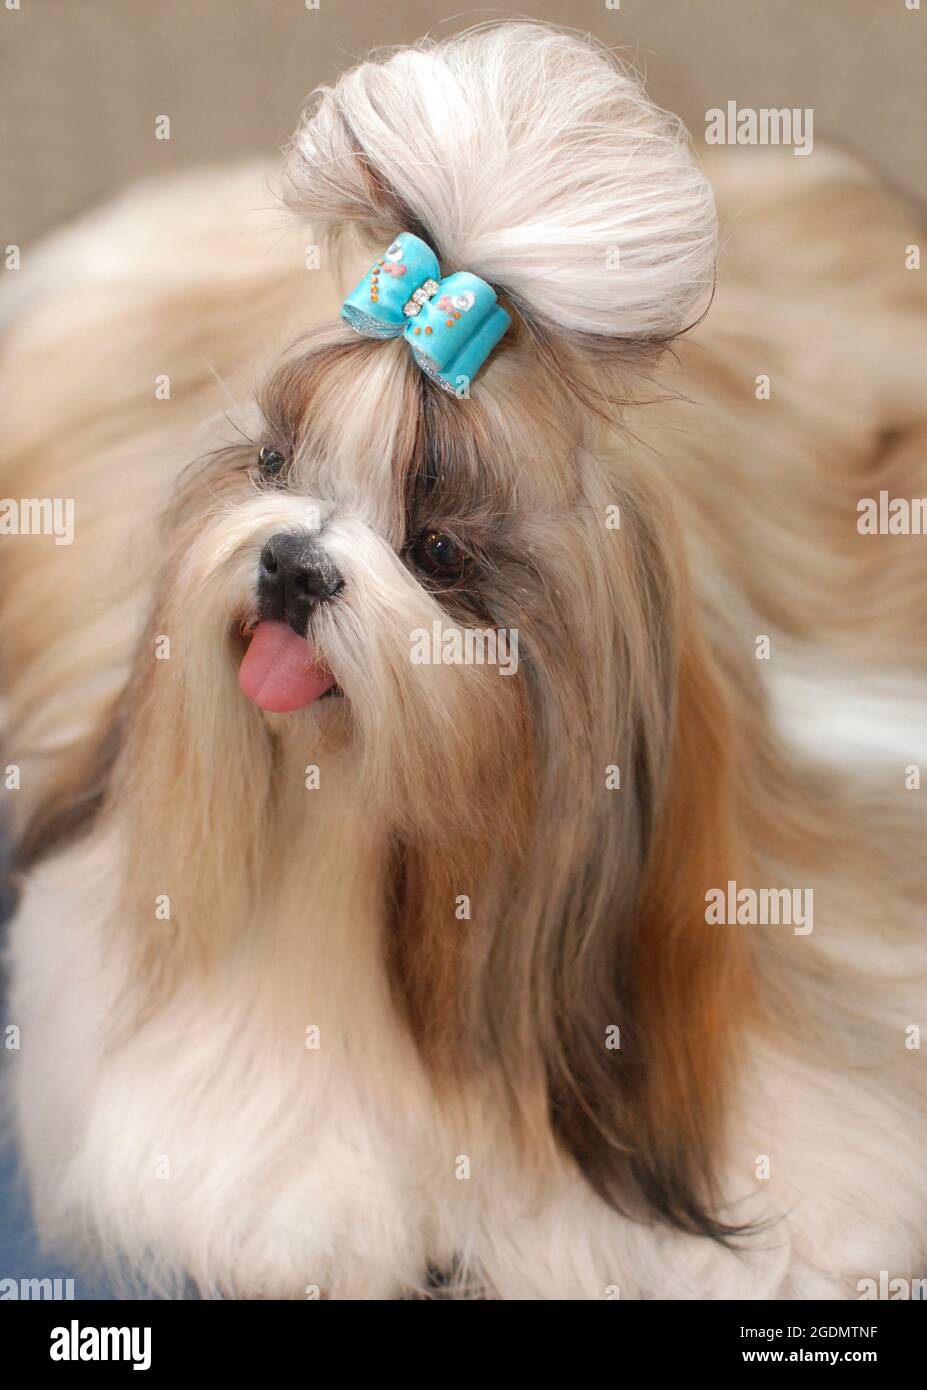 Un pedigree bien entretenu Shih Tzu chien le 'Lion Dog' chinois avec un ruban bleu sur sa tête Banque D'Images